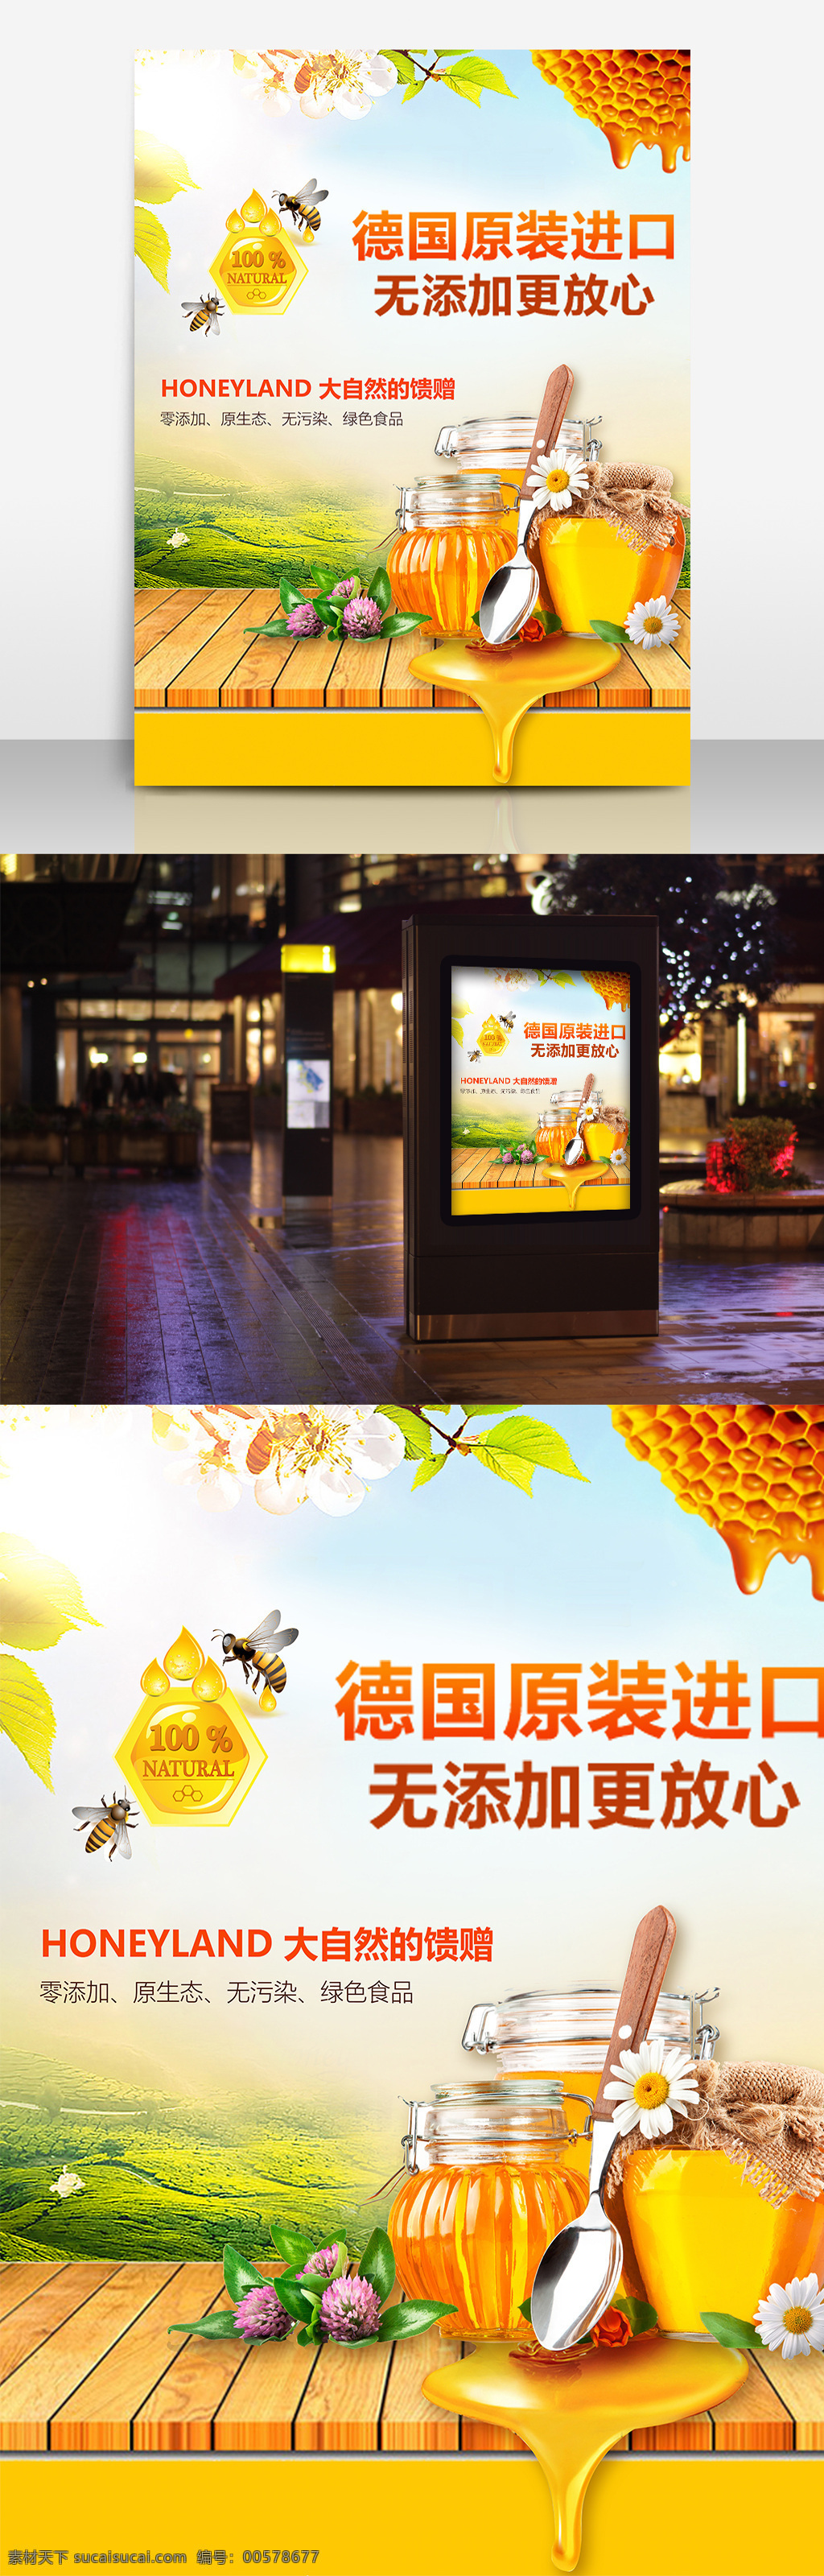 黄色 蜂蜜 清新 美食 宣传海报 食品海报 蜂蜜食品海报 平面海报 美食海报 农家蜂蜜